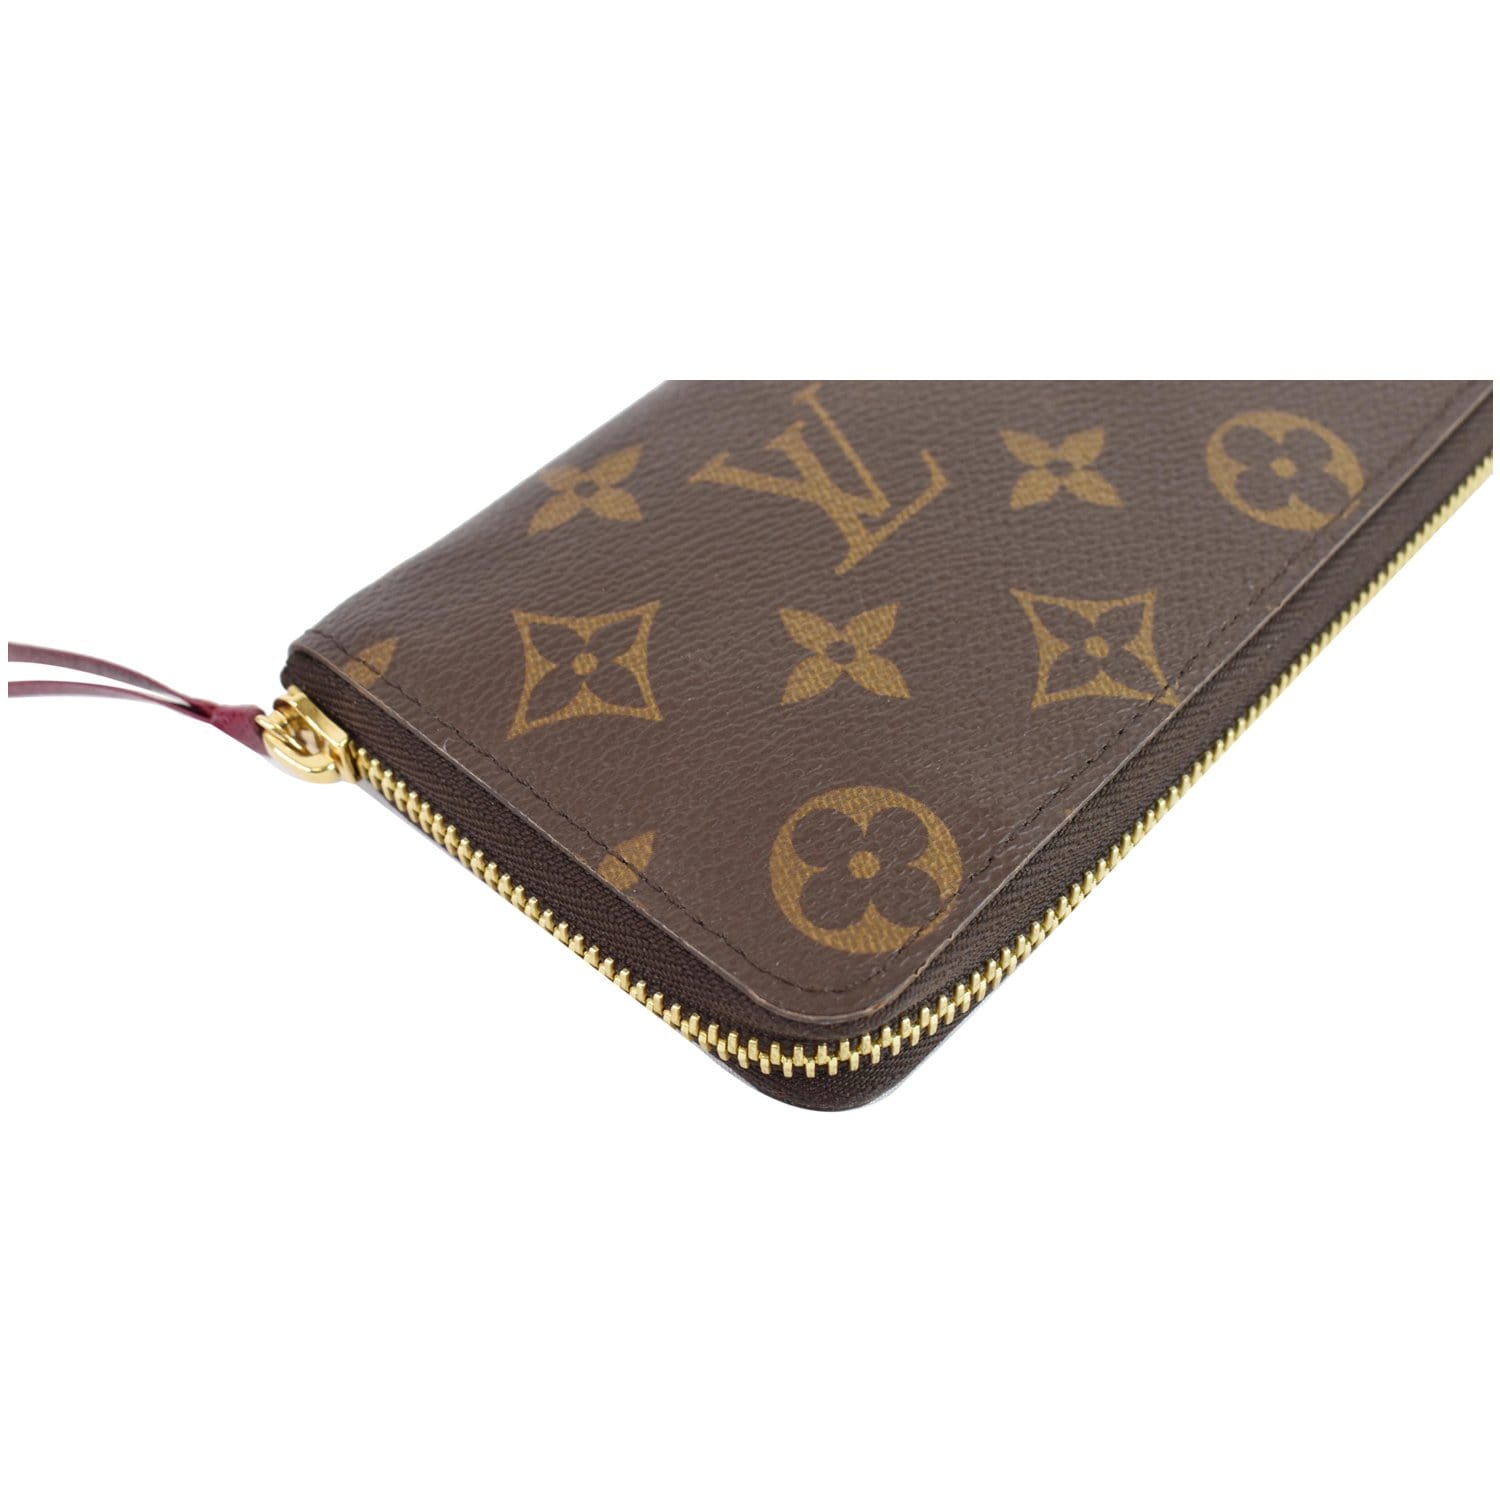 LOUIS VUITTON M60017 Zip Around Zippy wallet purse Brown Monogram